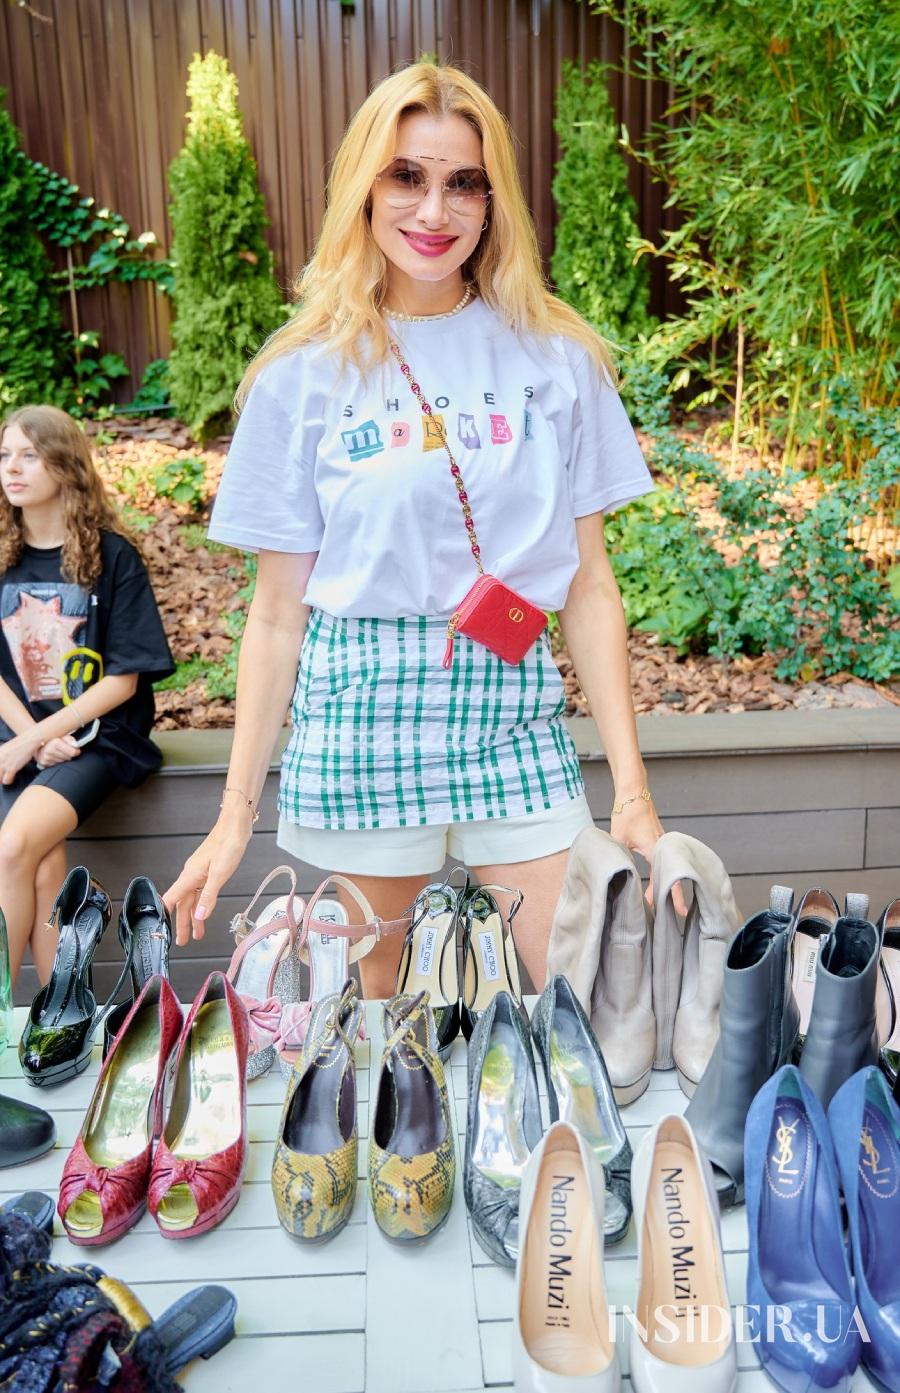 Знайти пару: Катя Сільченко провела благодійний Shoes Market